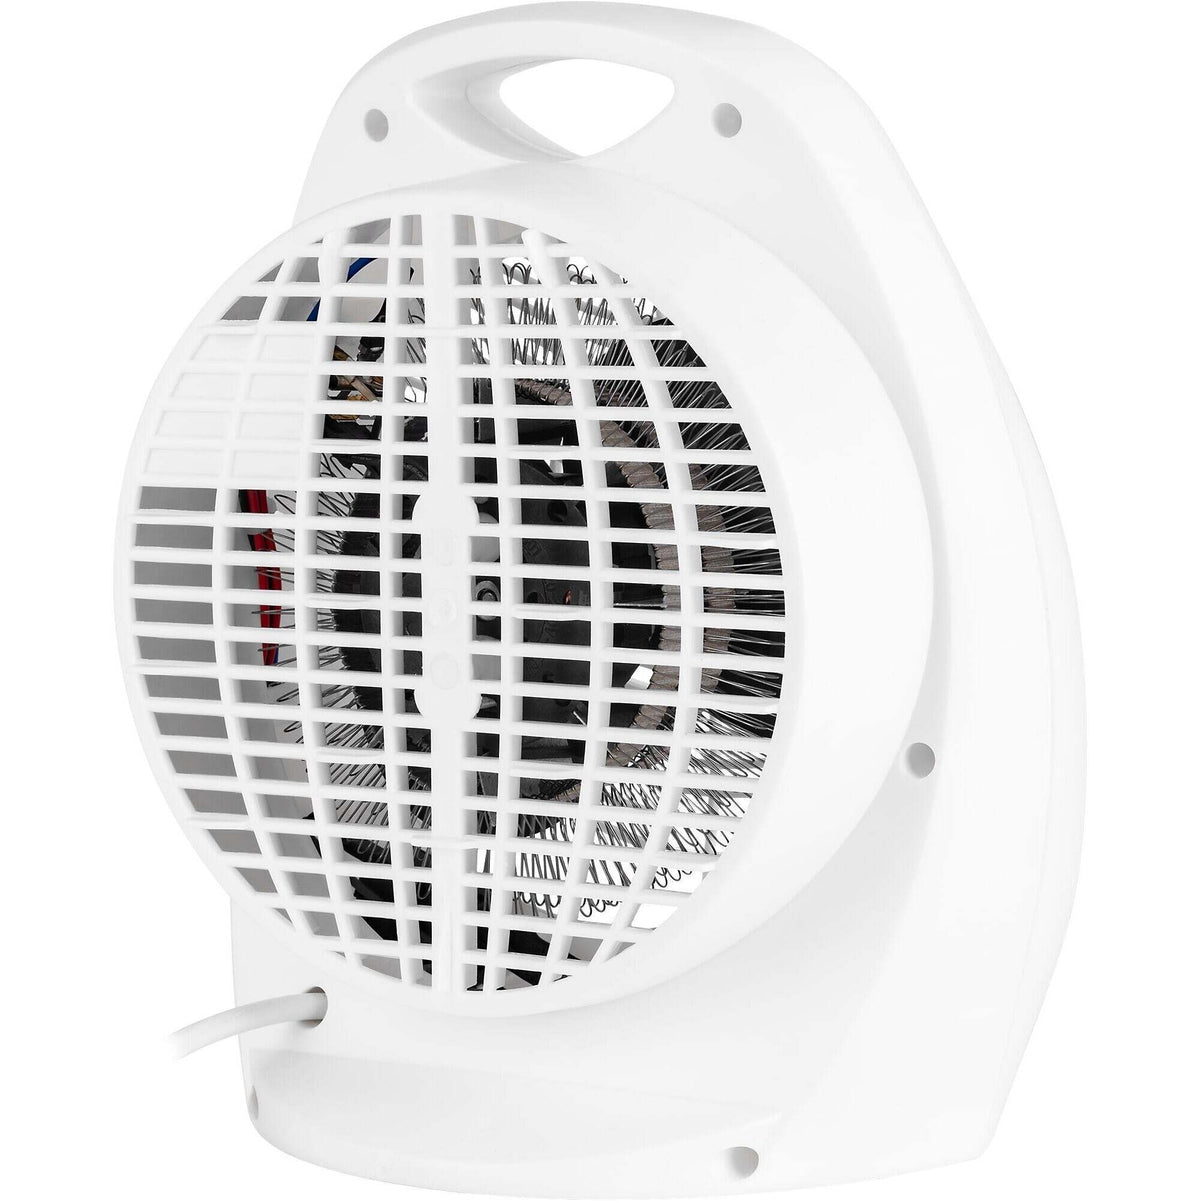 Teplovzdušný ventilátor ECG Heat R TV 3030 White POŠKODENÝ OBAL